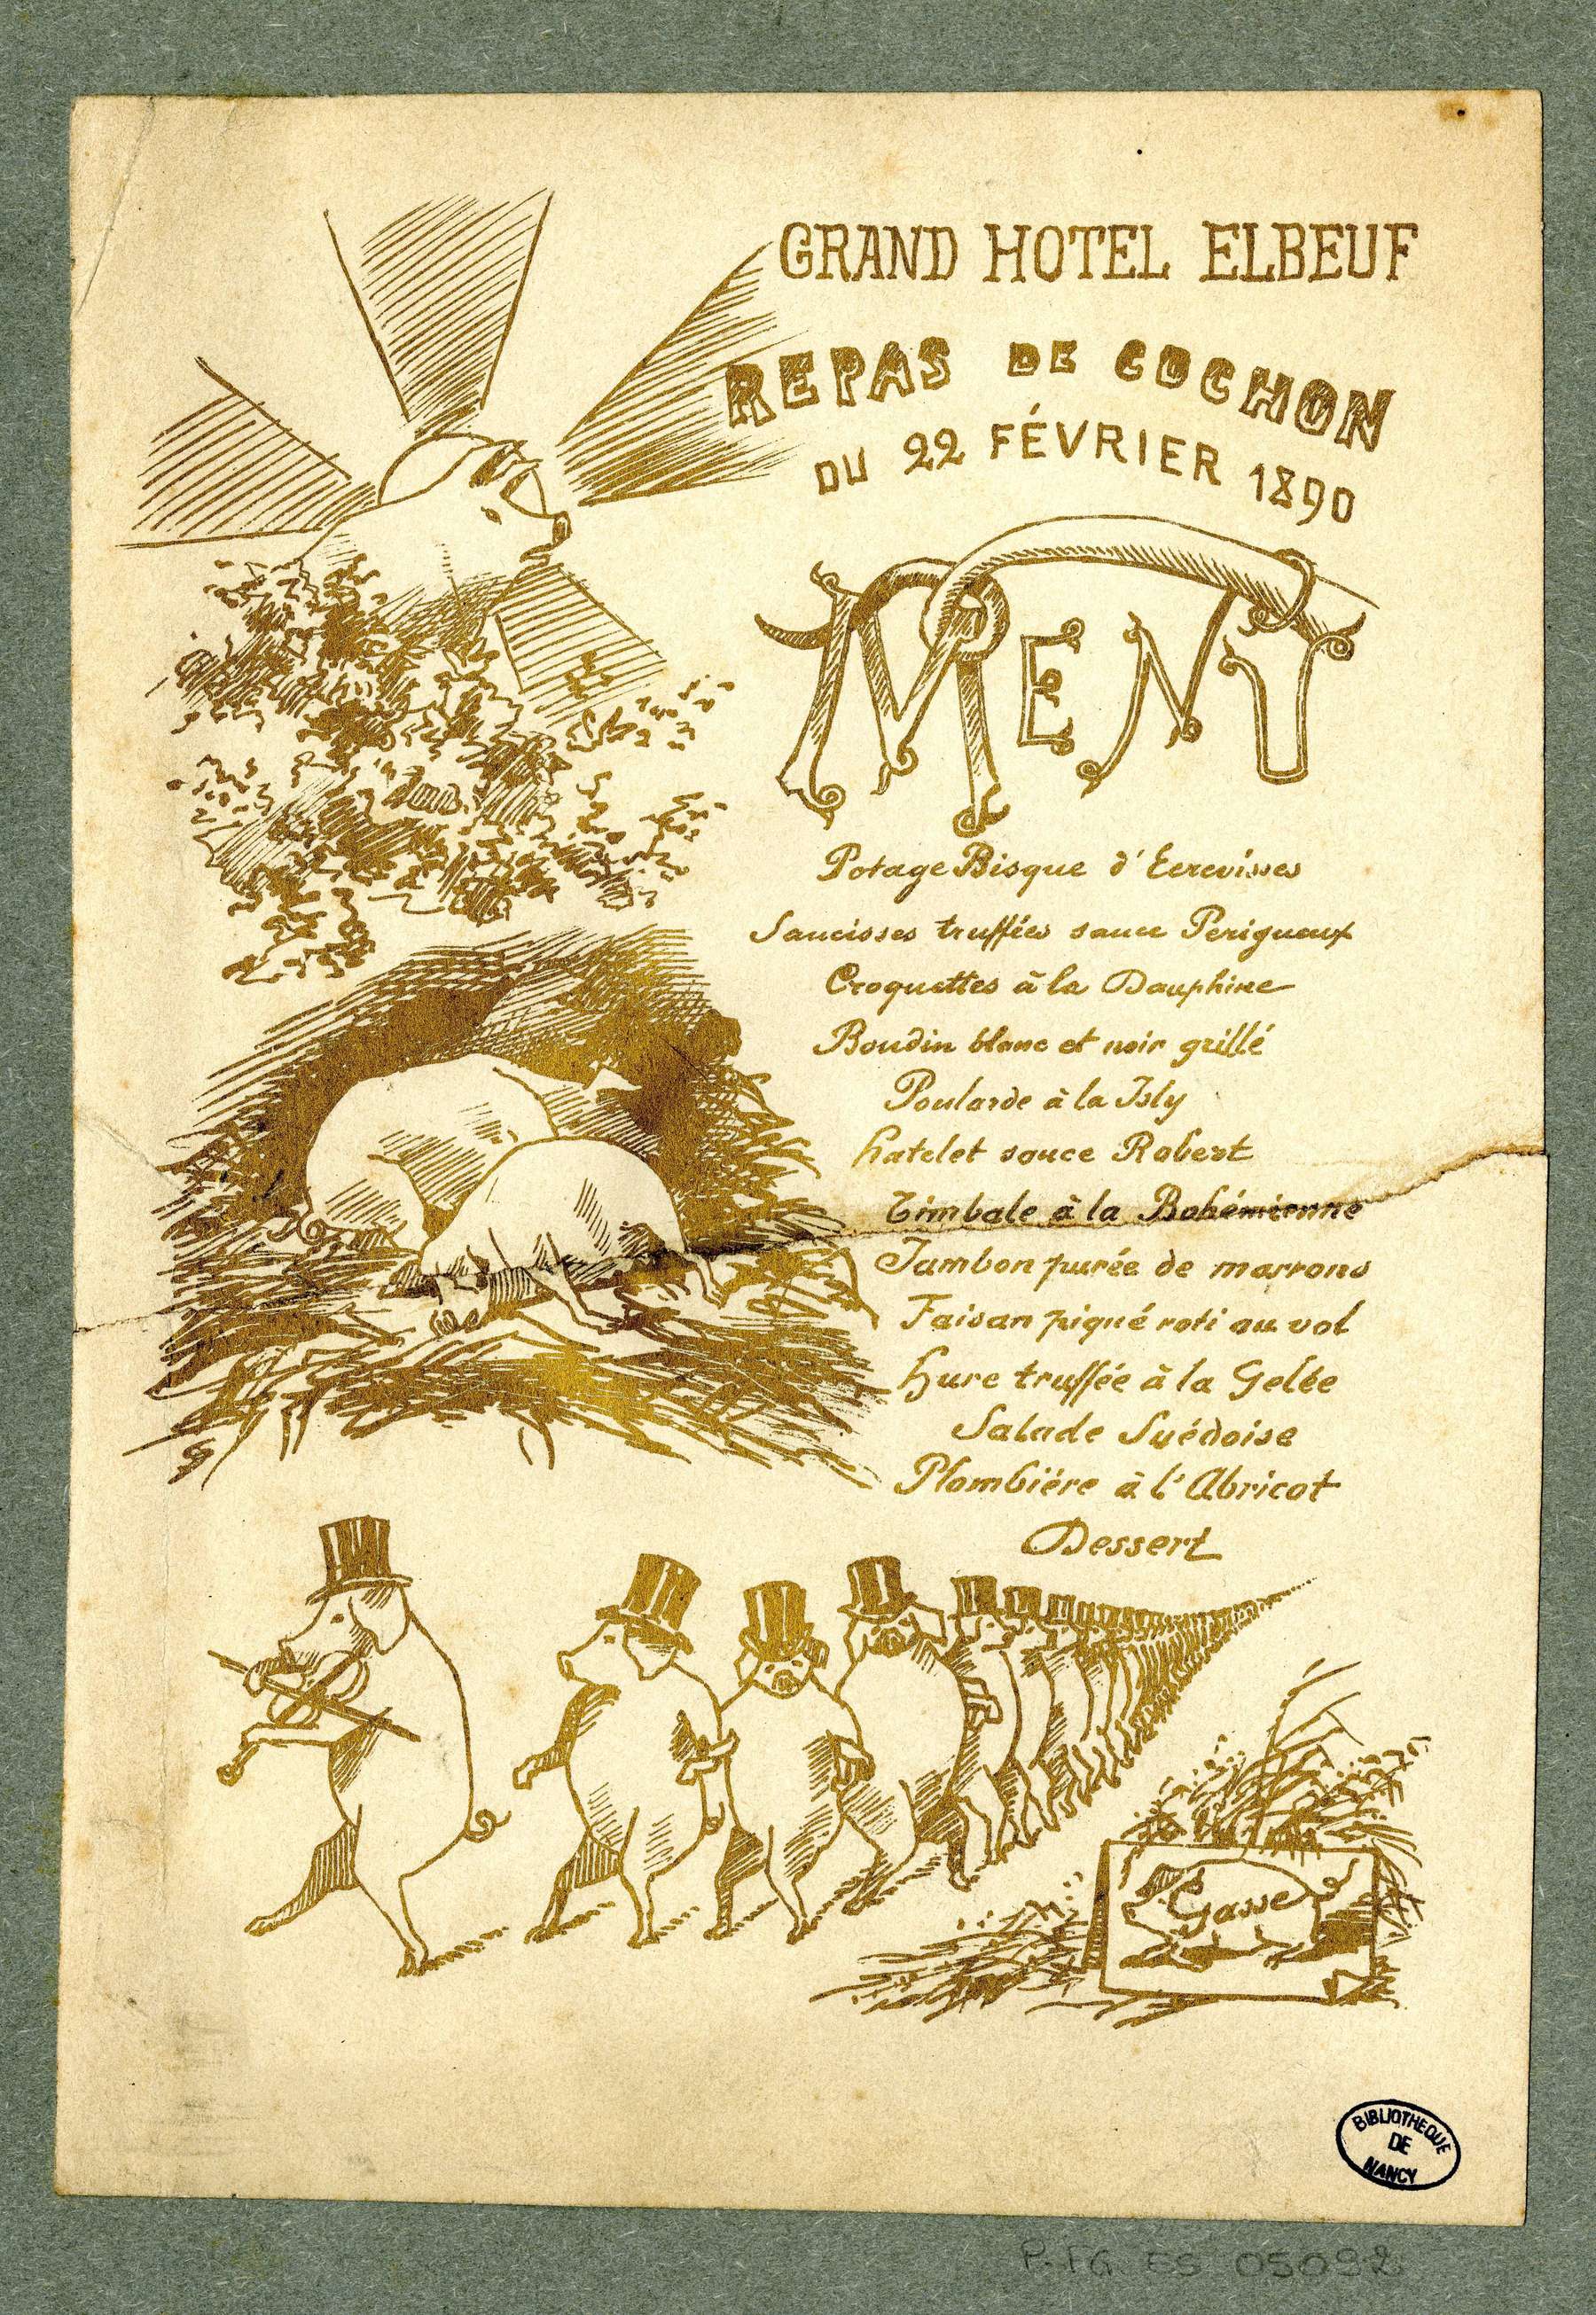 Contenu du Repas de cochon du 22 février 1890 : menu